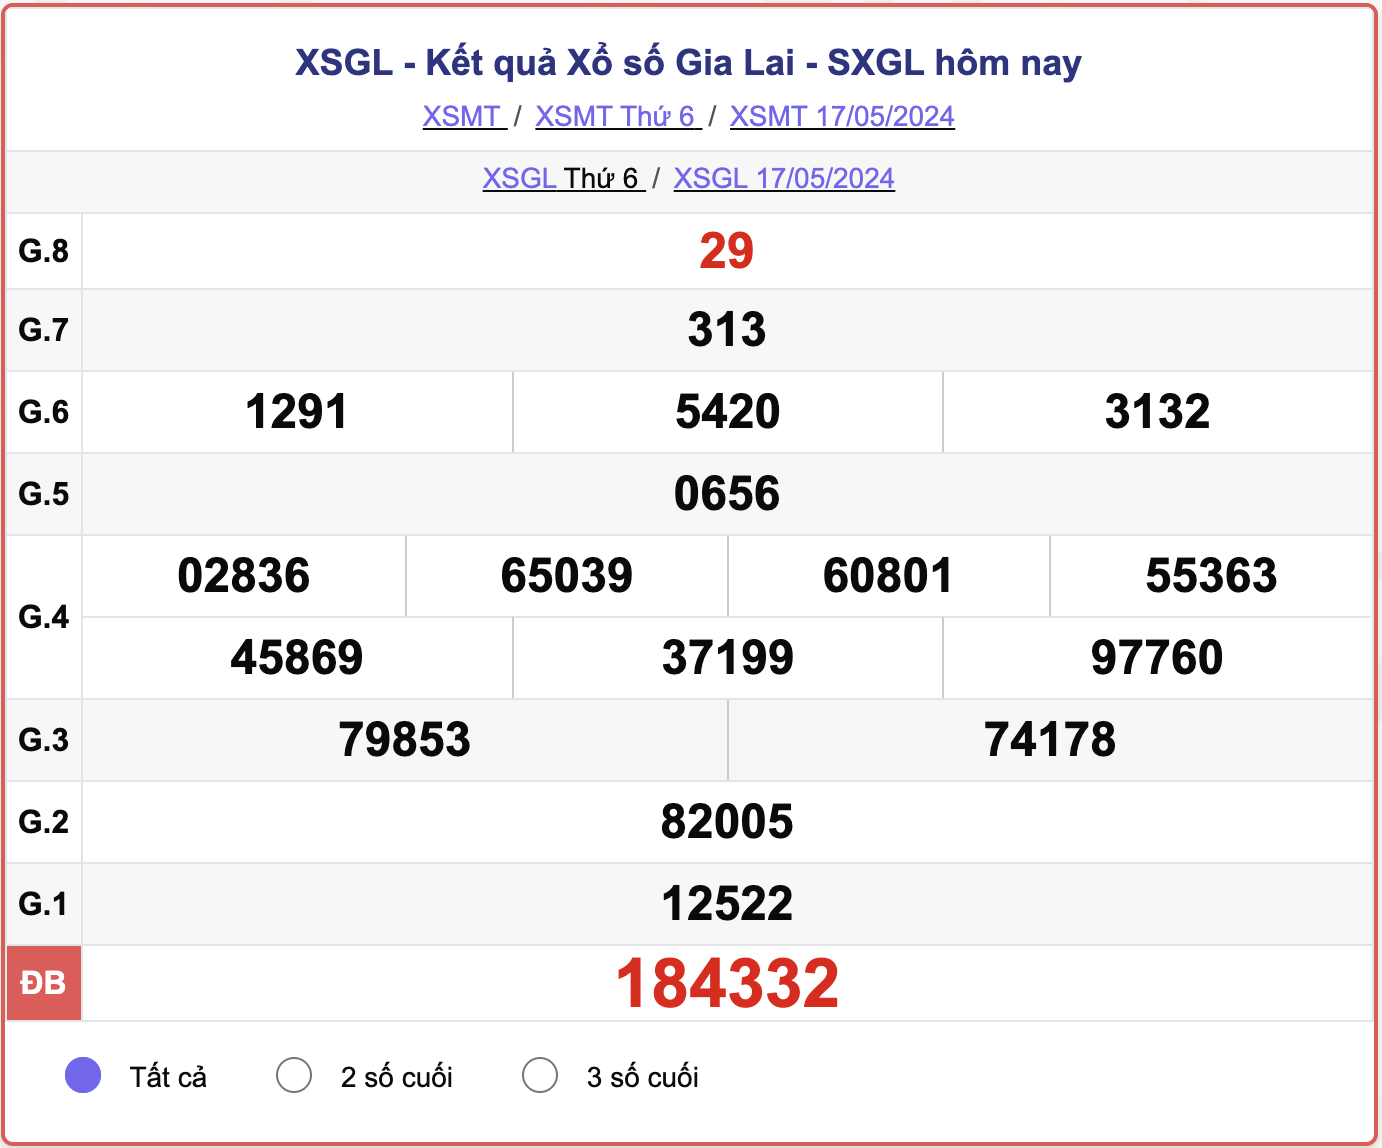 XSGL thứ Sáu, kết quả xổ số Gia Lai ngày 17/5/2024.